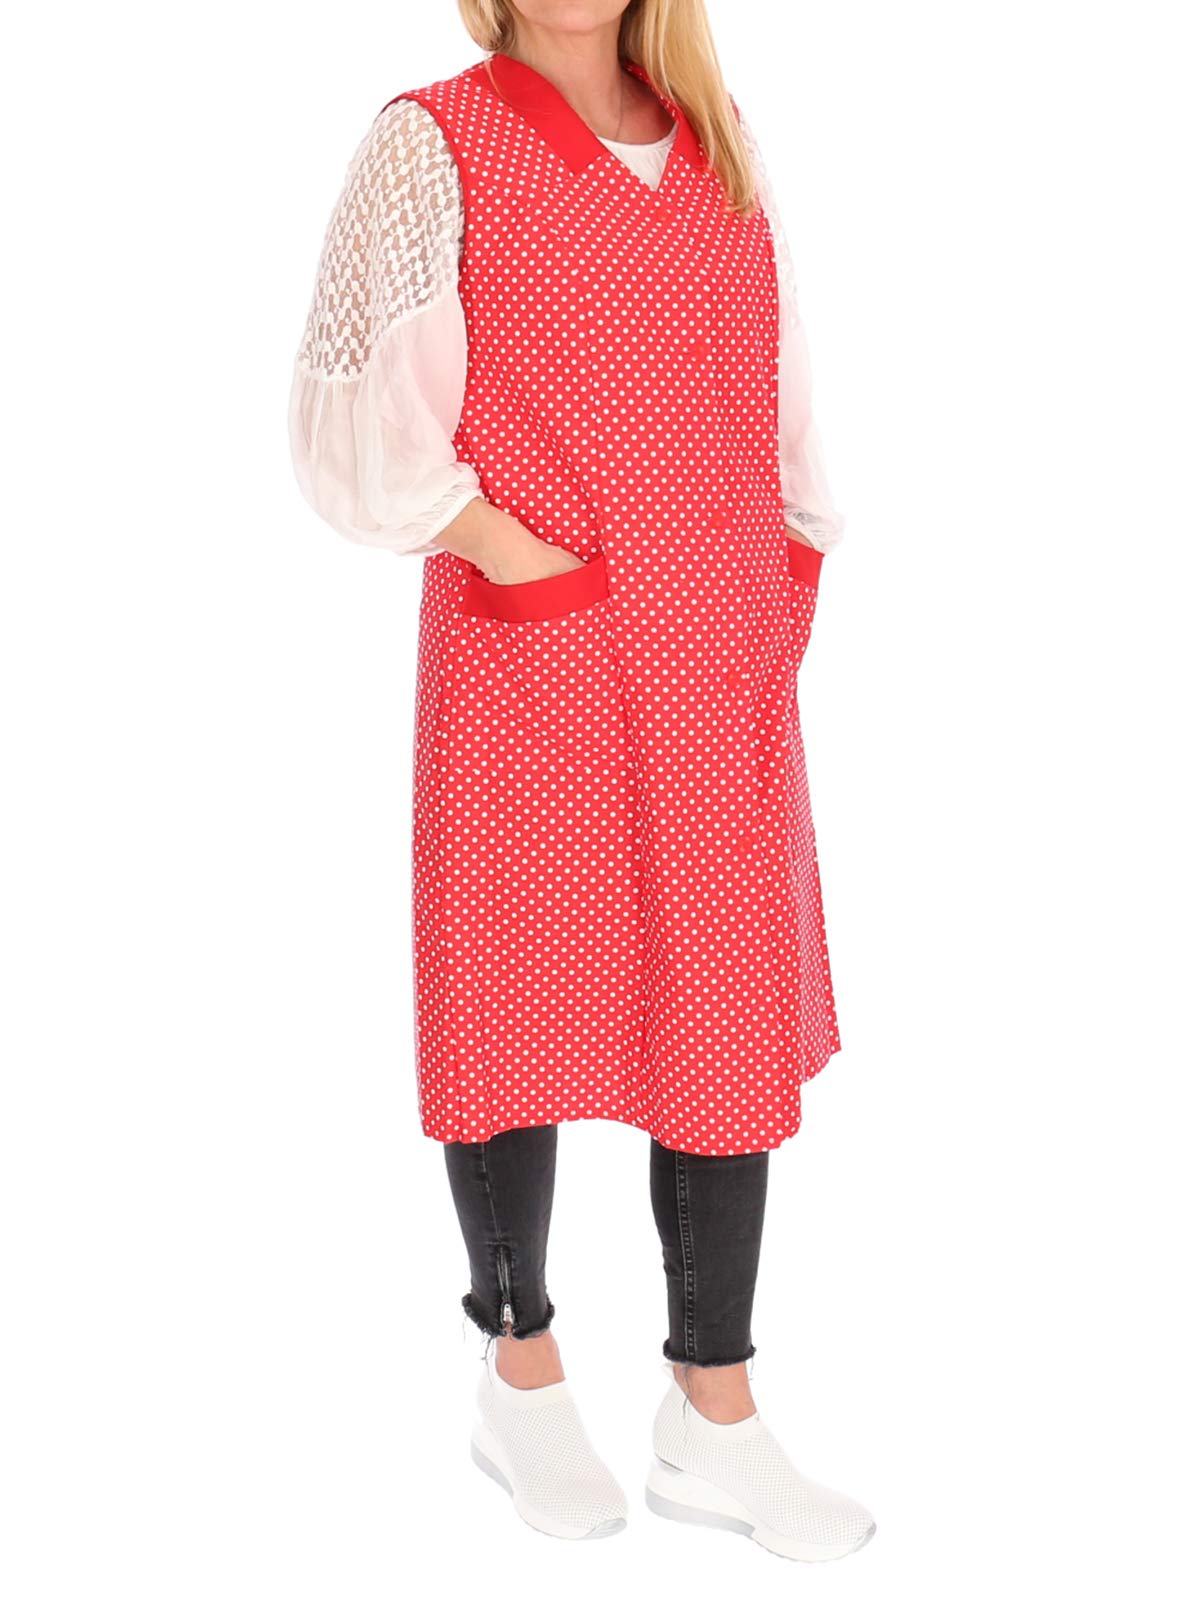 Damenkittel Kittel Schürze Hauskleid ohne Arm Baumwolle rot o. blau weiße Punkte, Farbe:rot, Größe:44